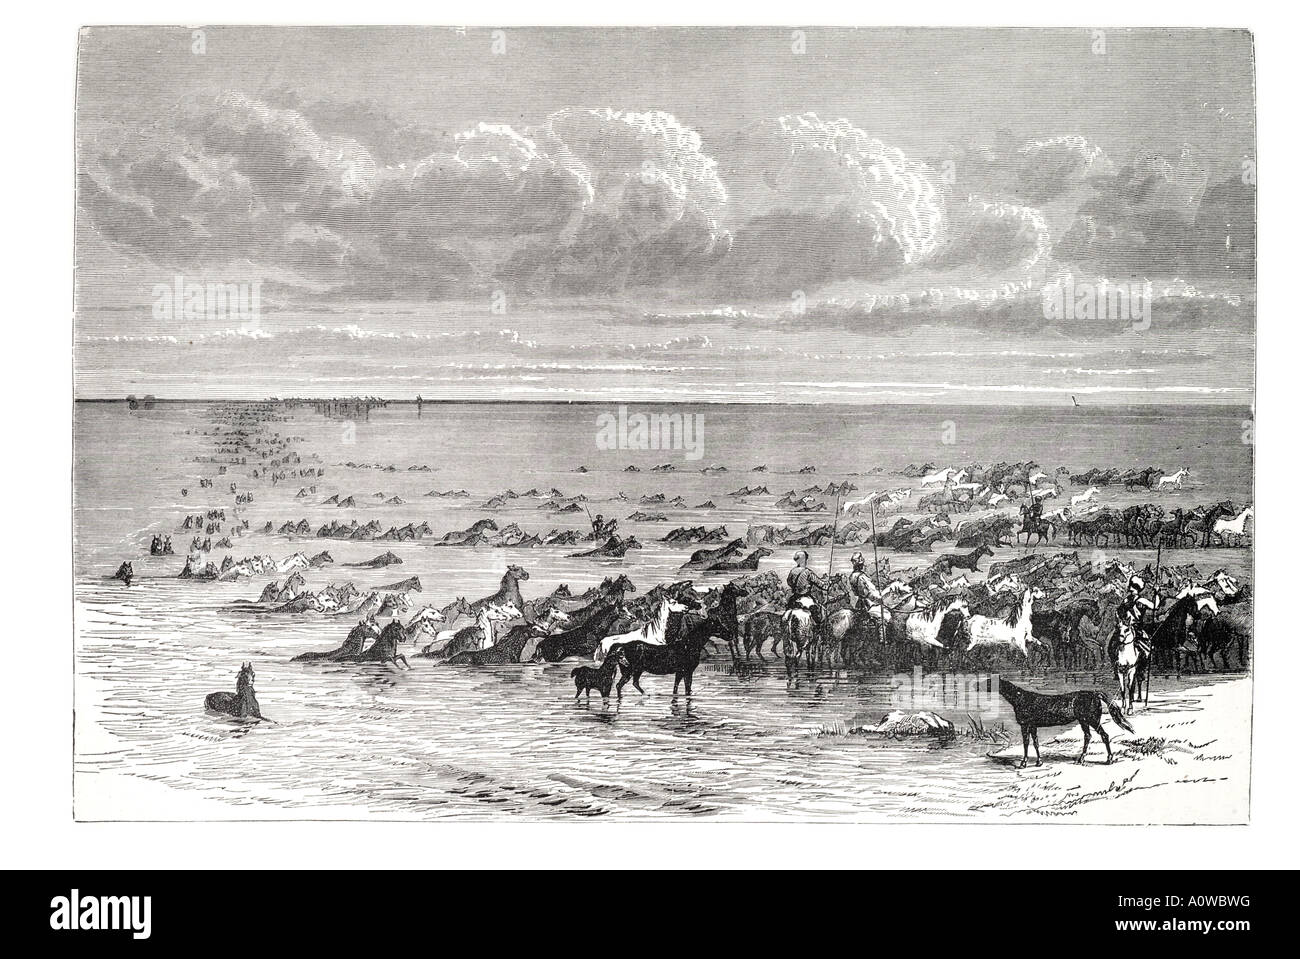 L'troupeau cross natation Volga Russie impériale tsariste shore bank étalon mare peu profonde du commerce noir blanc ride rider large Banque D'Images